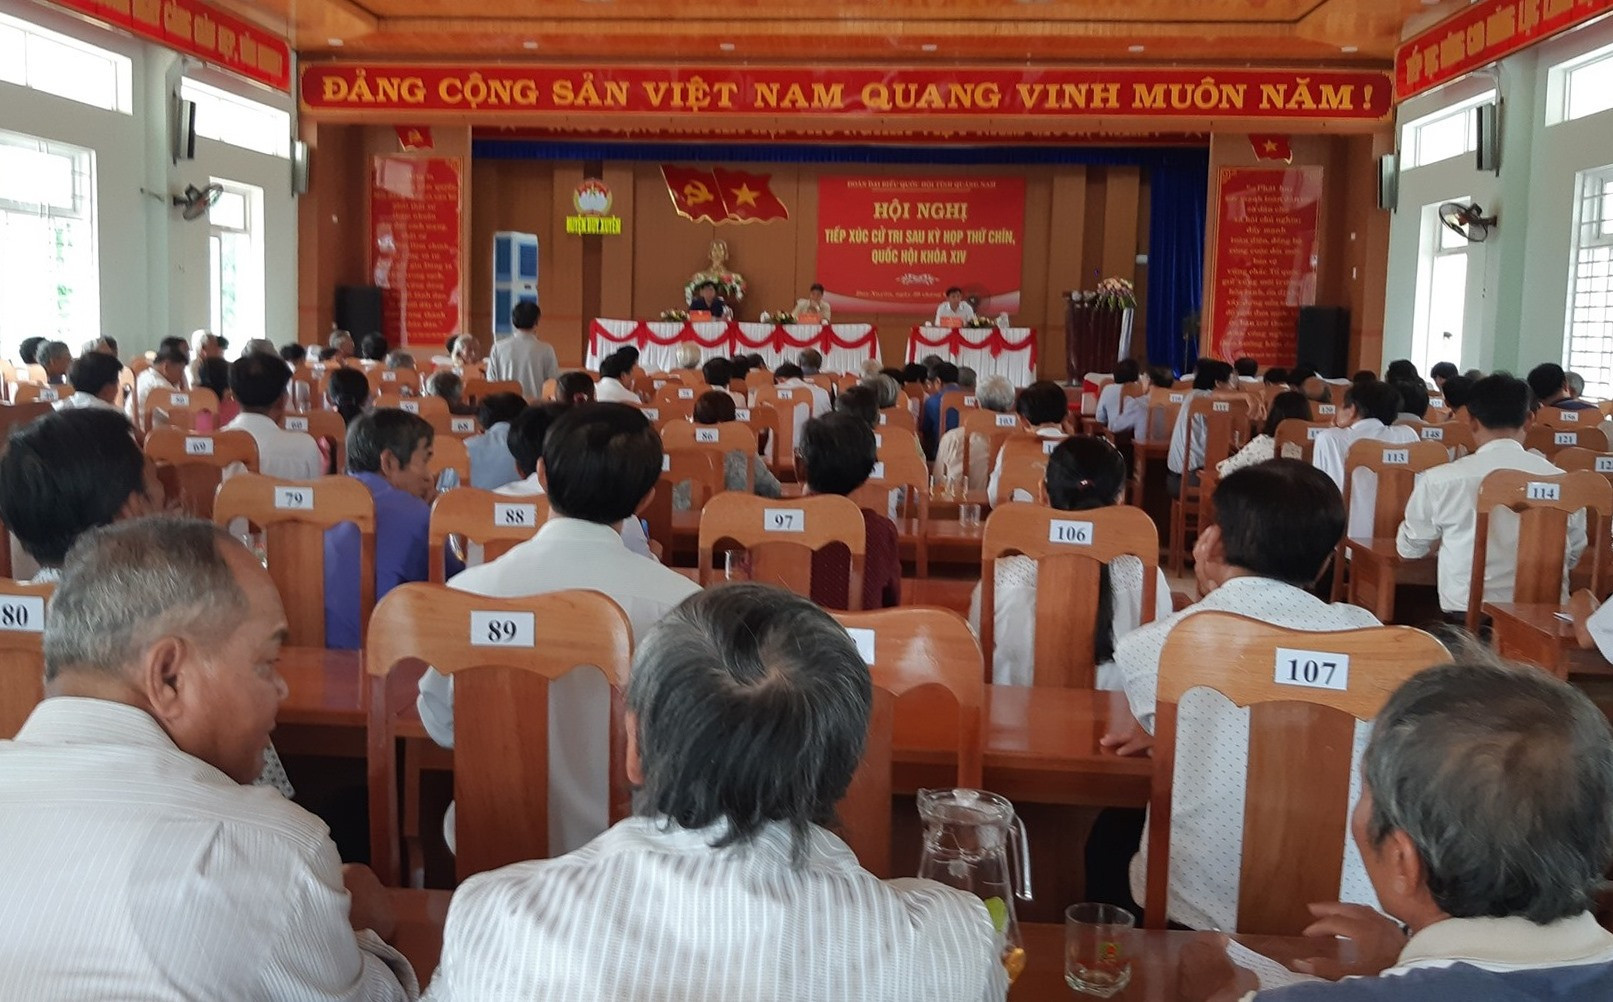 Đông đảo cử tri các xã vùng đông Duy Xuyên tham gia buổi tiếp xúc cử tri tại xã Duy Nghĩa. Ảnh: HOÀNG LIÊN